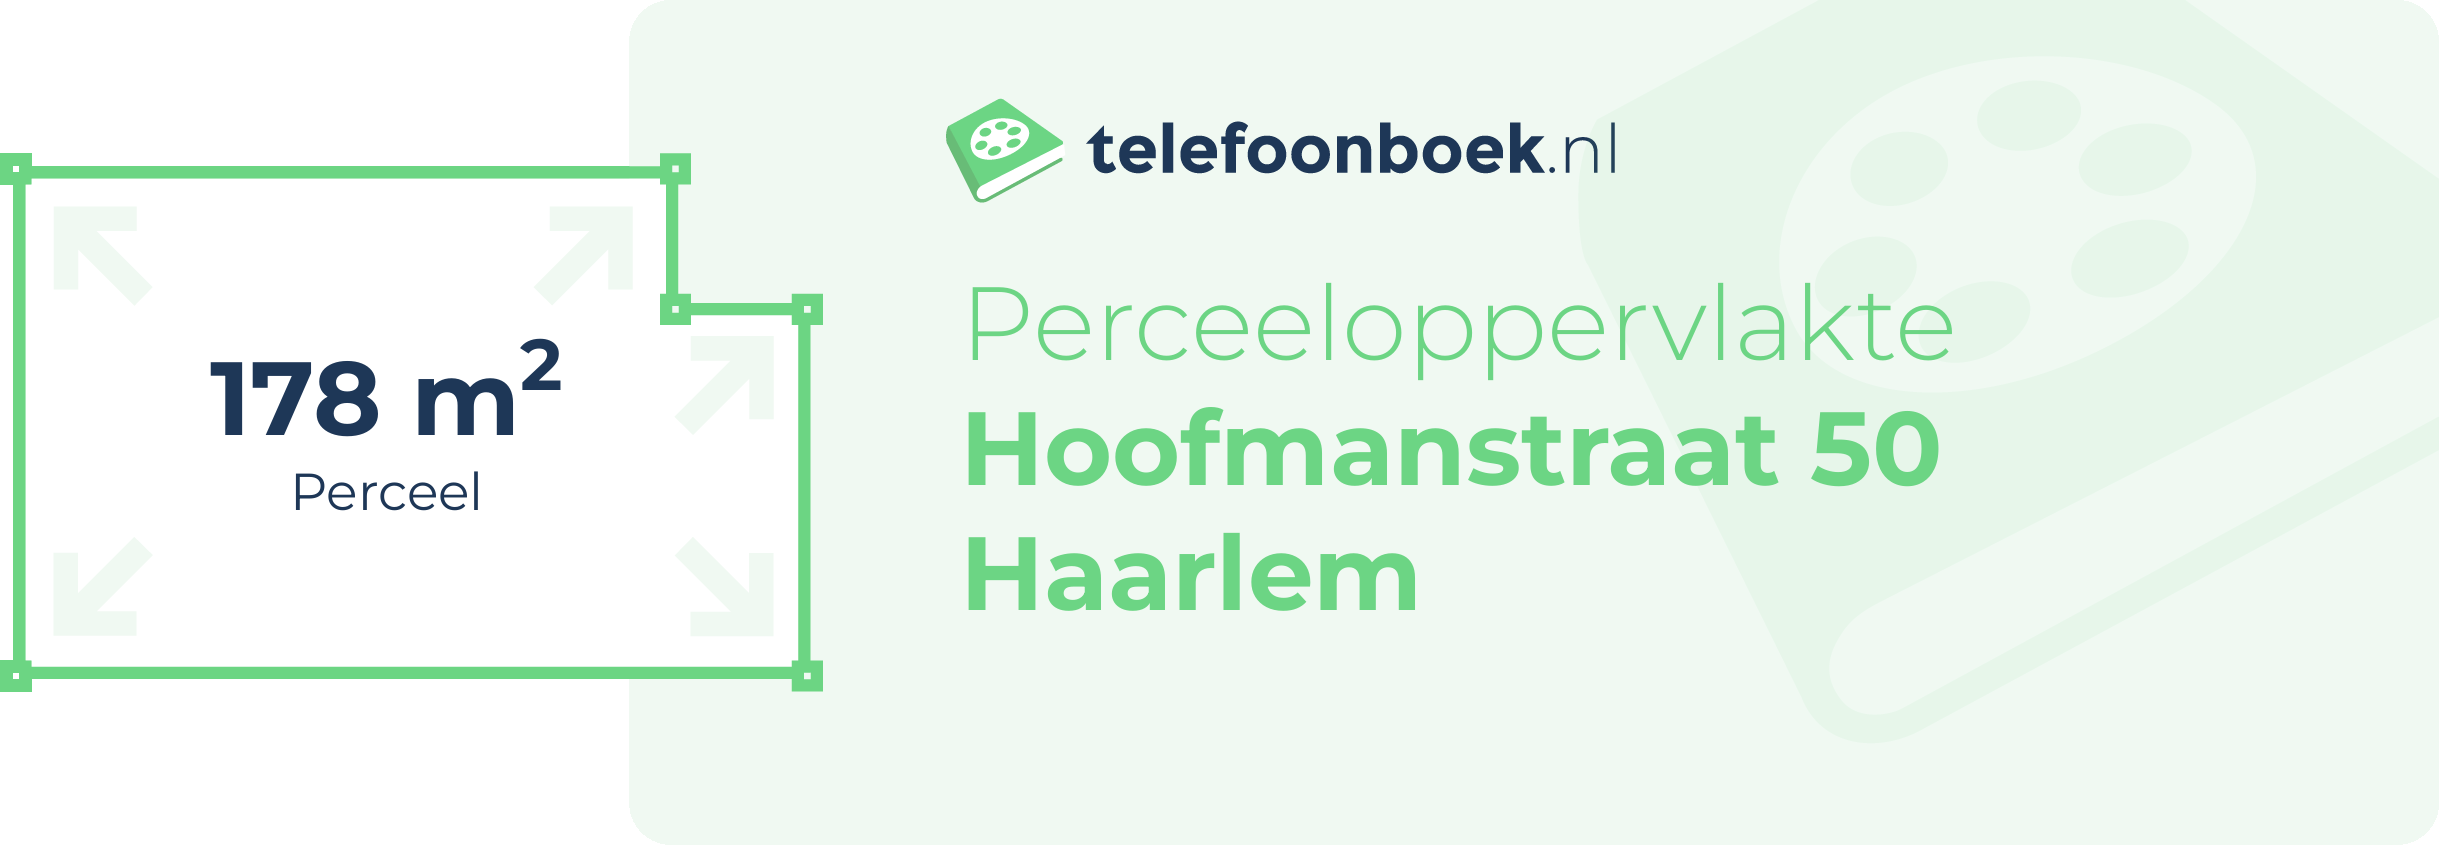 Perceeloppervlakte Hoofmanstraat 50 Haarlem